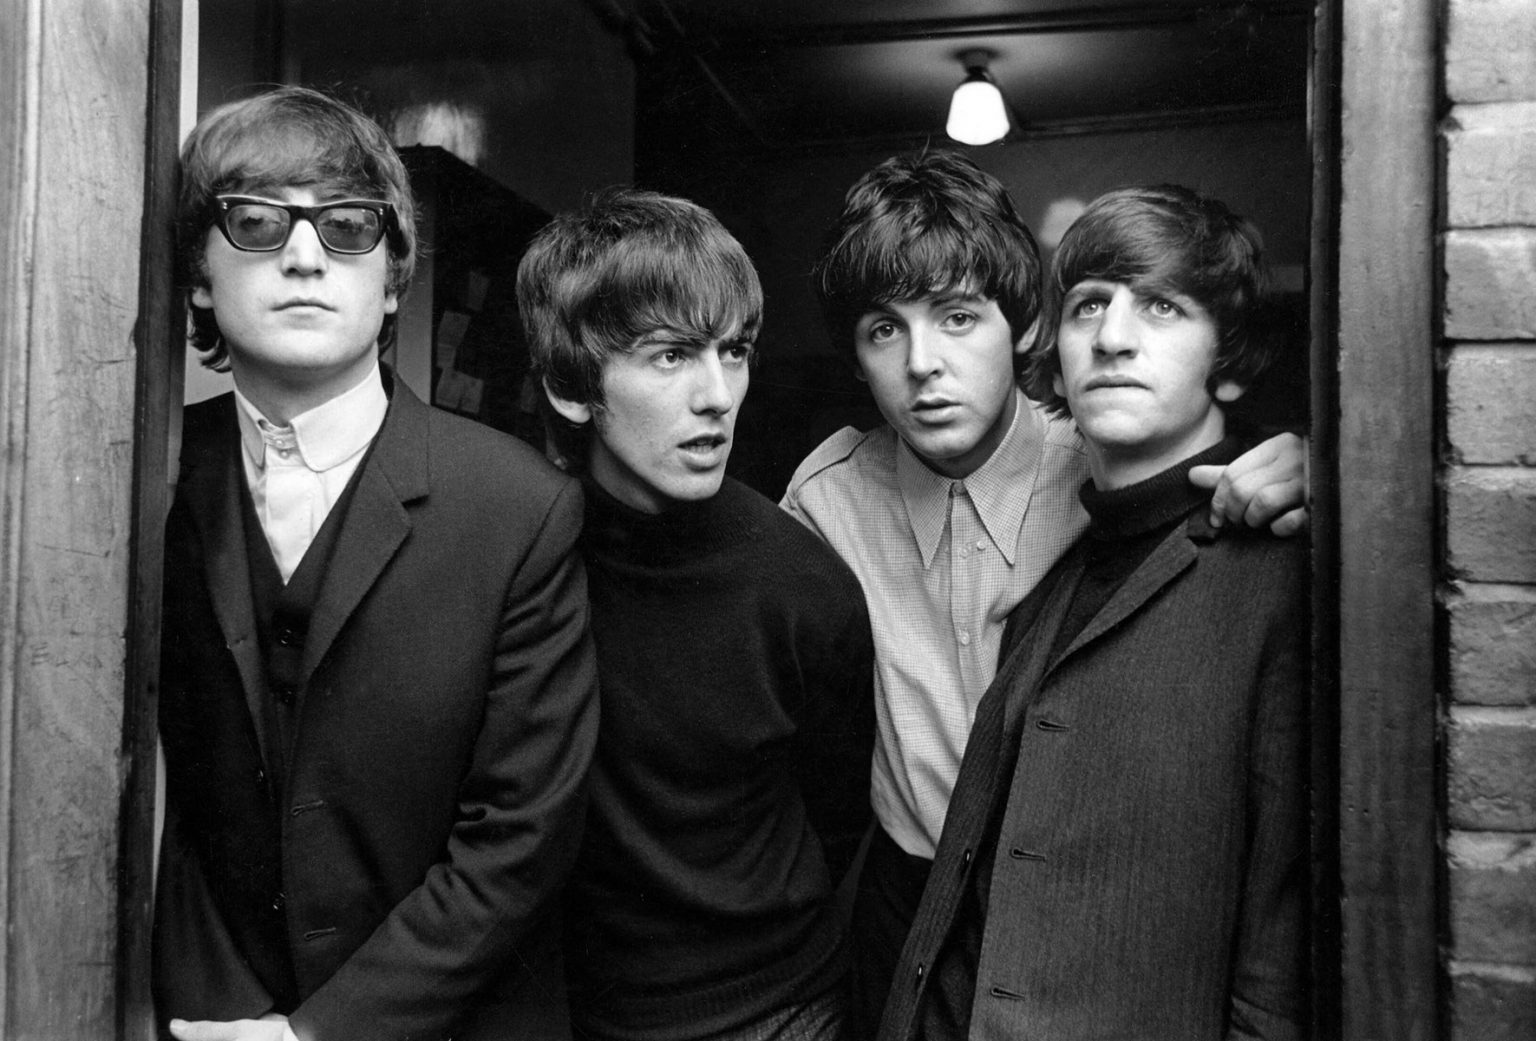 Появилось первое цветное видео выступления The Beatles